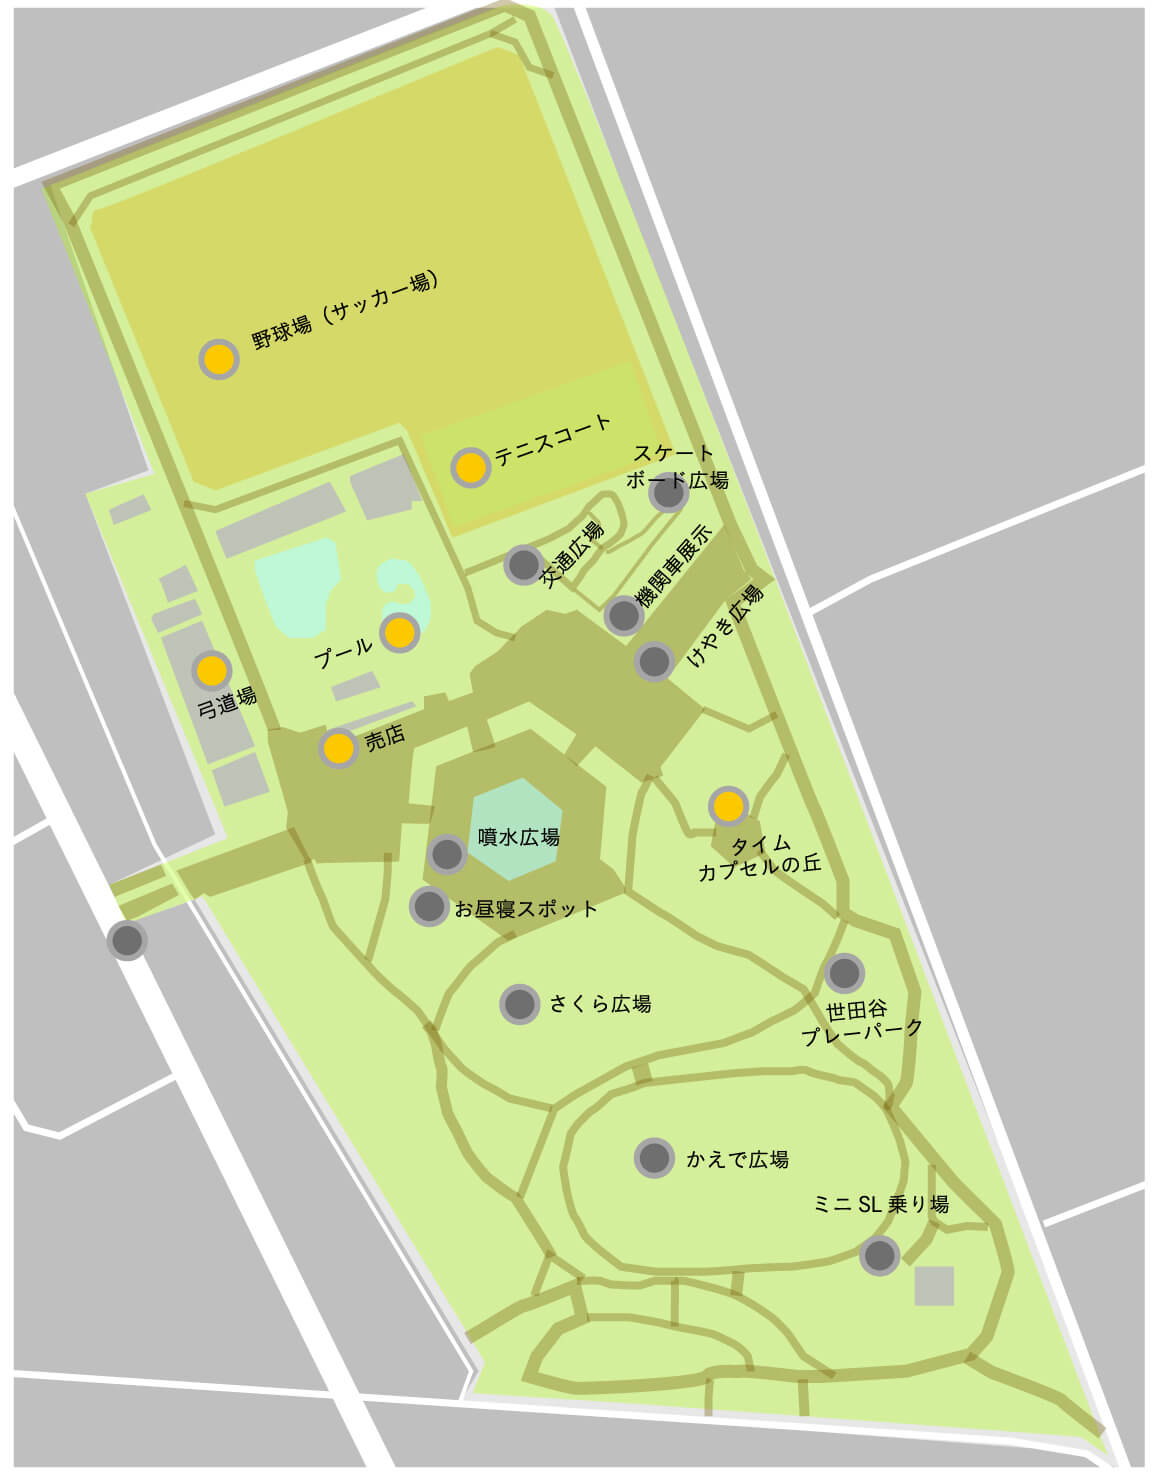 この画像は世田谷公園のその他施設を記載した園内マップです。